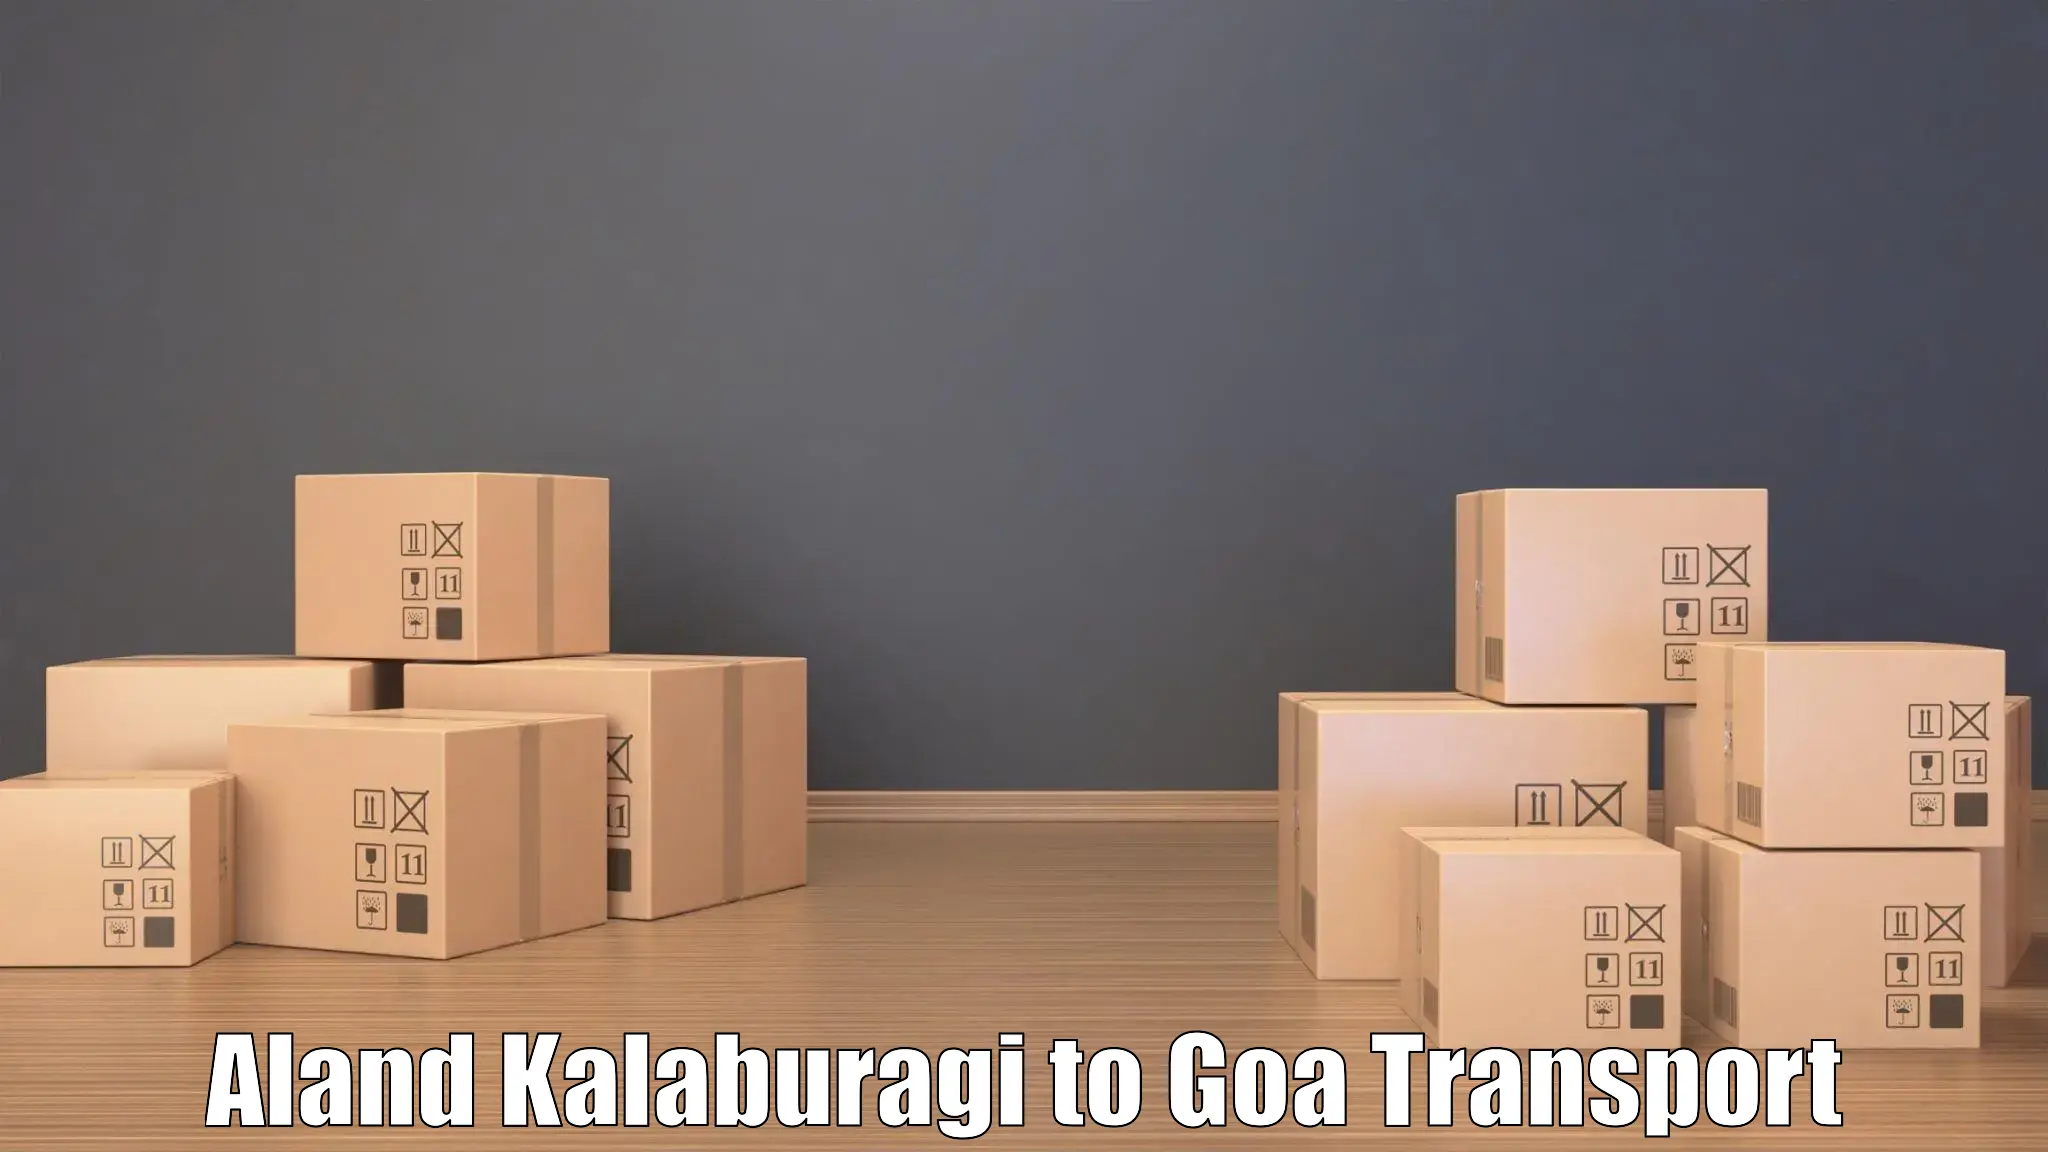 Cargo train transport services Aland Kalaburagi to NIT Goa